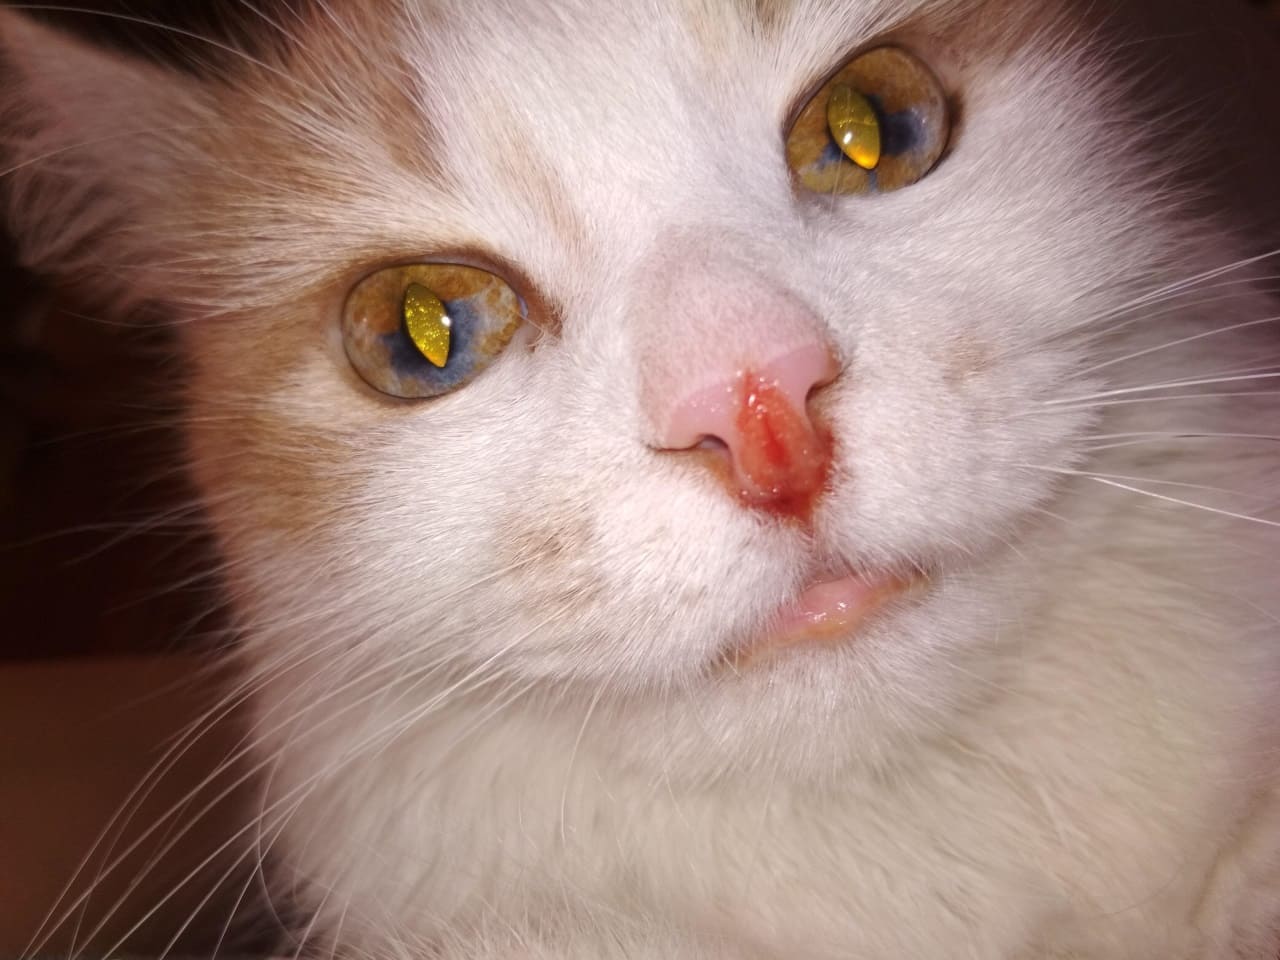 Кальцивироз у кошек: симптомы и последствия, лечение и профилактика